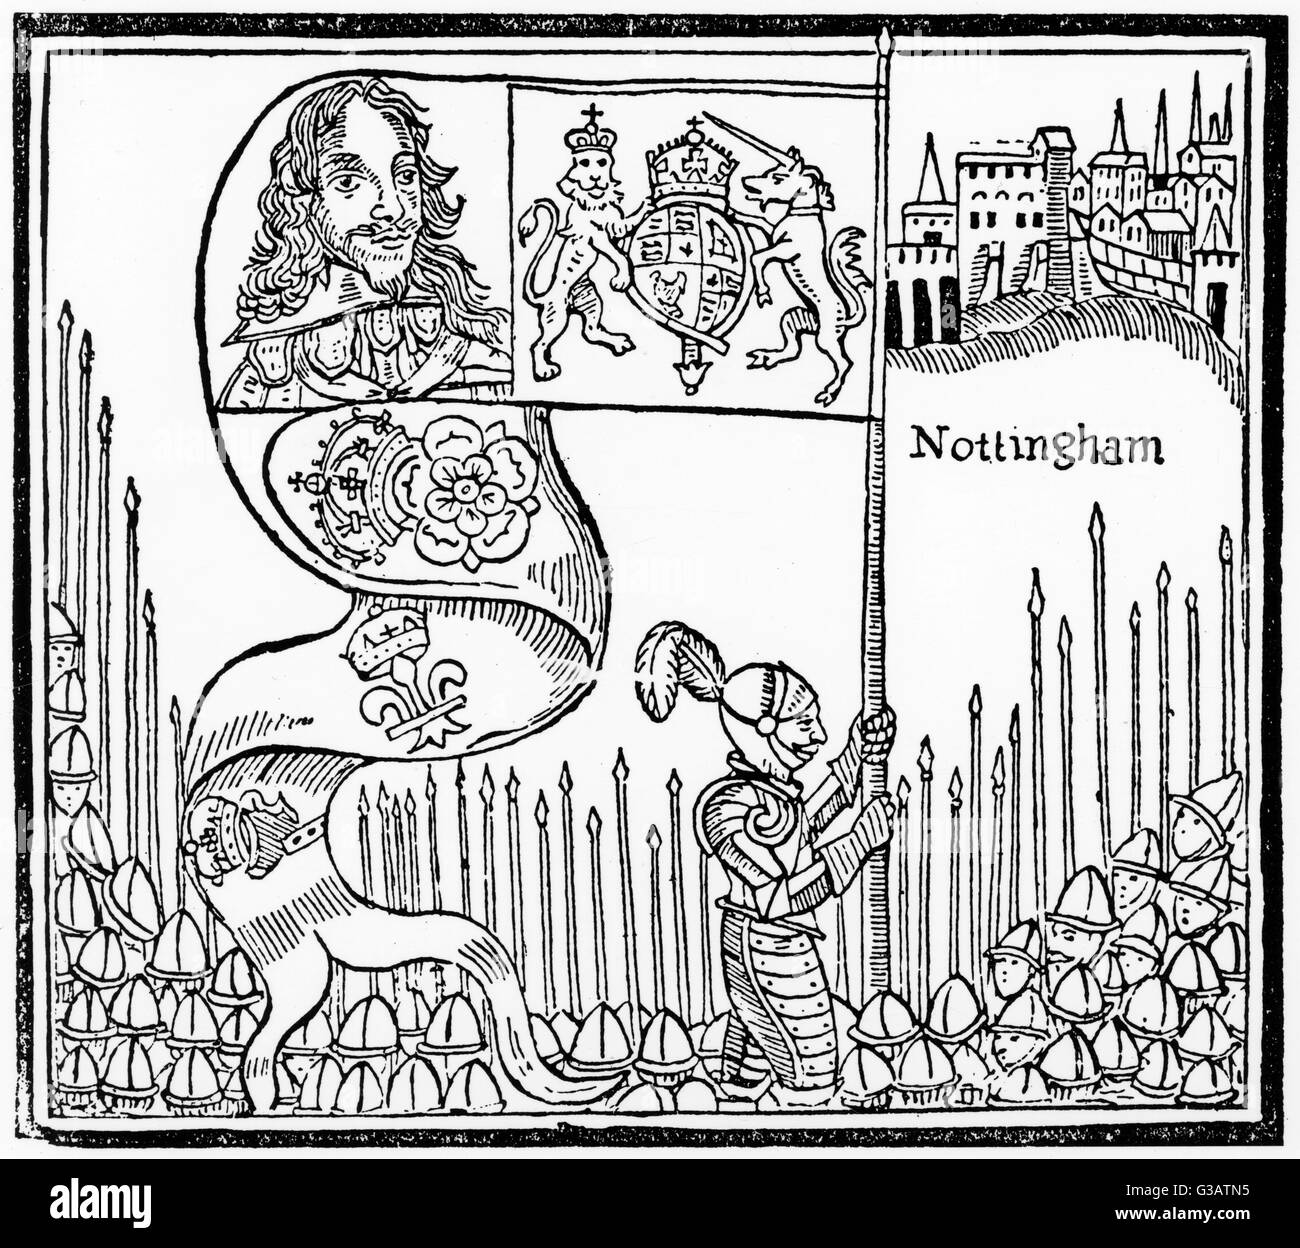 Re Carlo mi solleva il suo standard a Nottingham, segnalare l'inizio della guerra civile inglese. Data: 22 Agosto 1642 Foto Stock